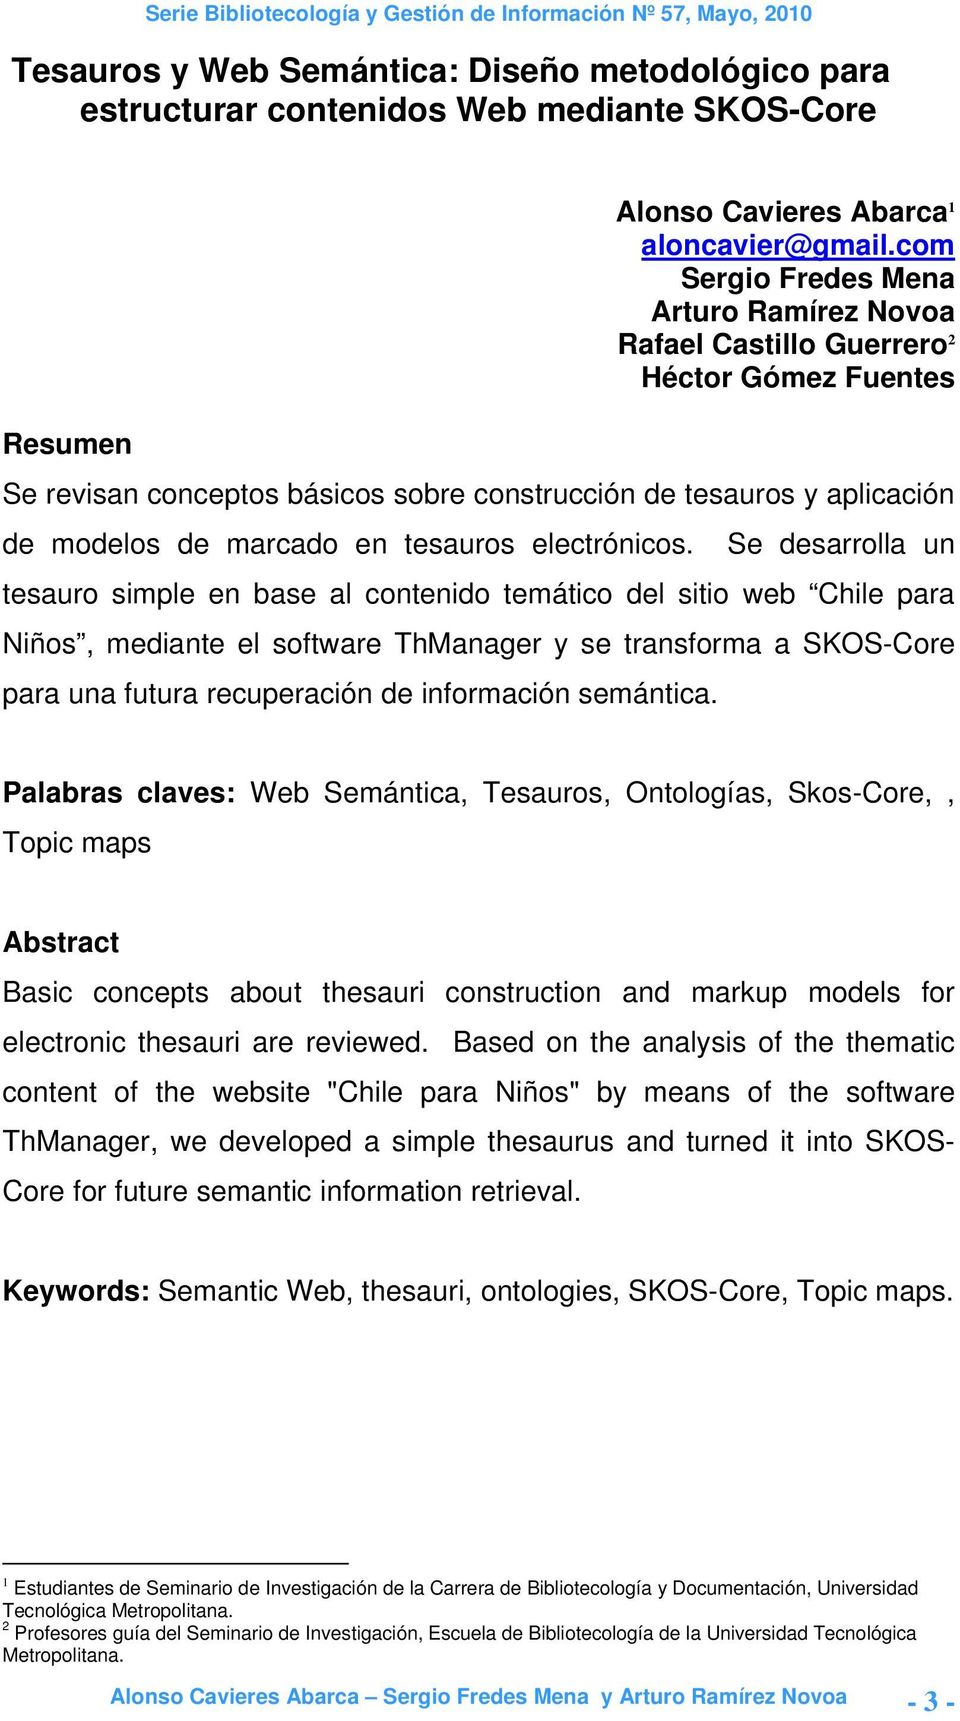 de marcado en tesauros electrónicos Se desarrolla un tesauro simple en base al contenido temático del sitio web Chile para Niños, mediante el software ThManager y se transforma a SKOS-Core para una